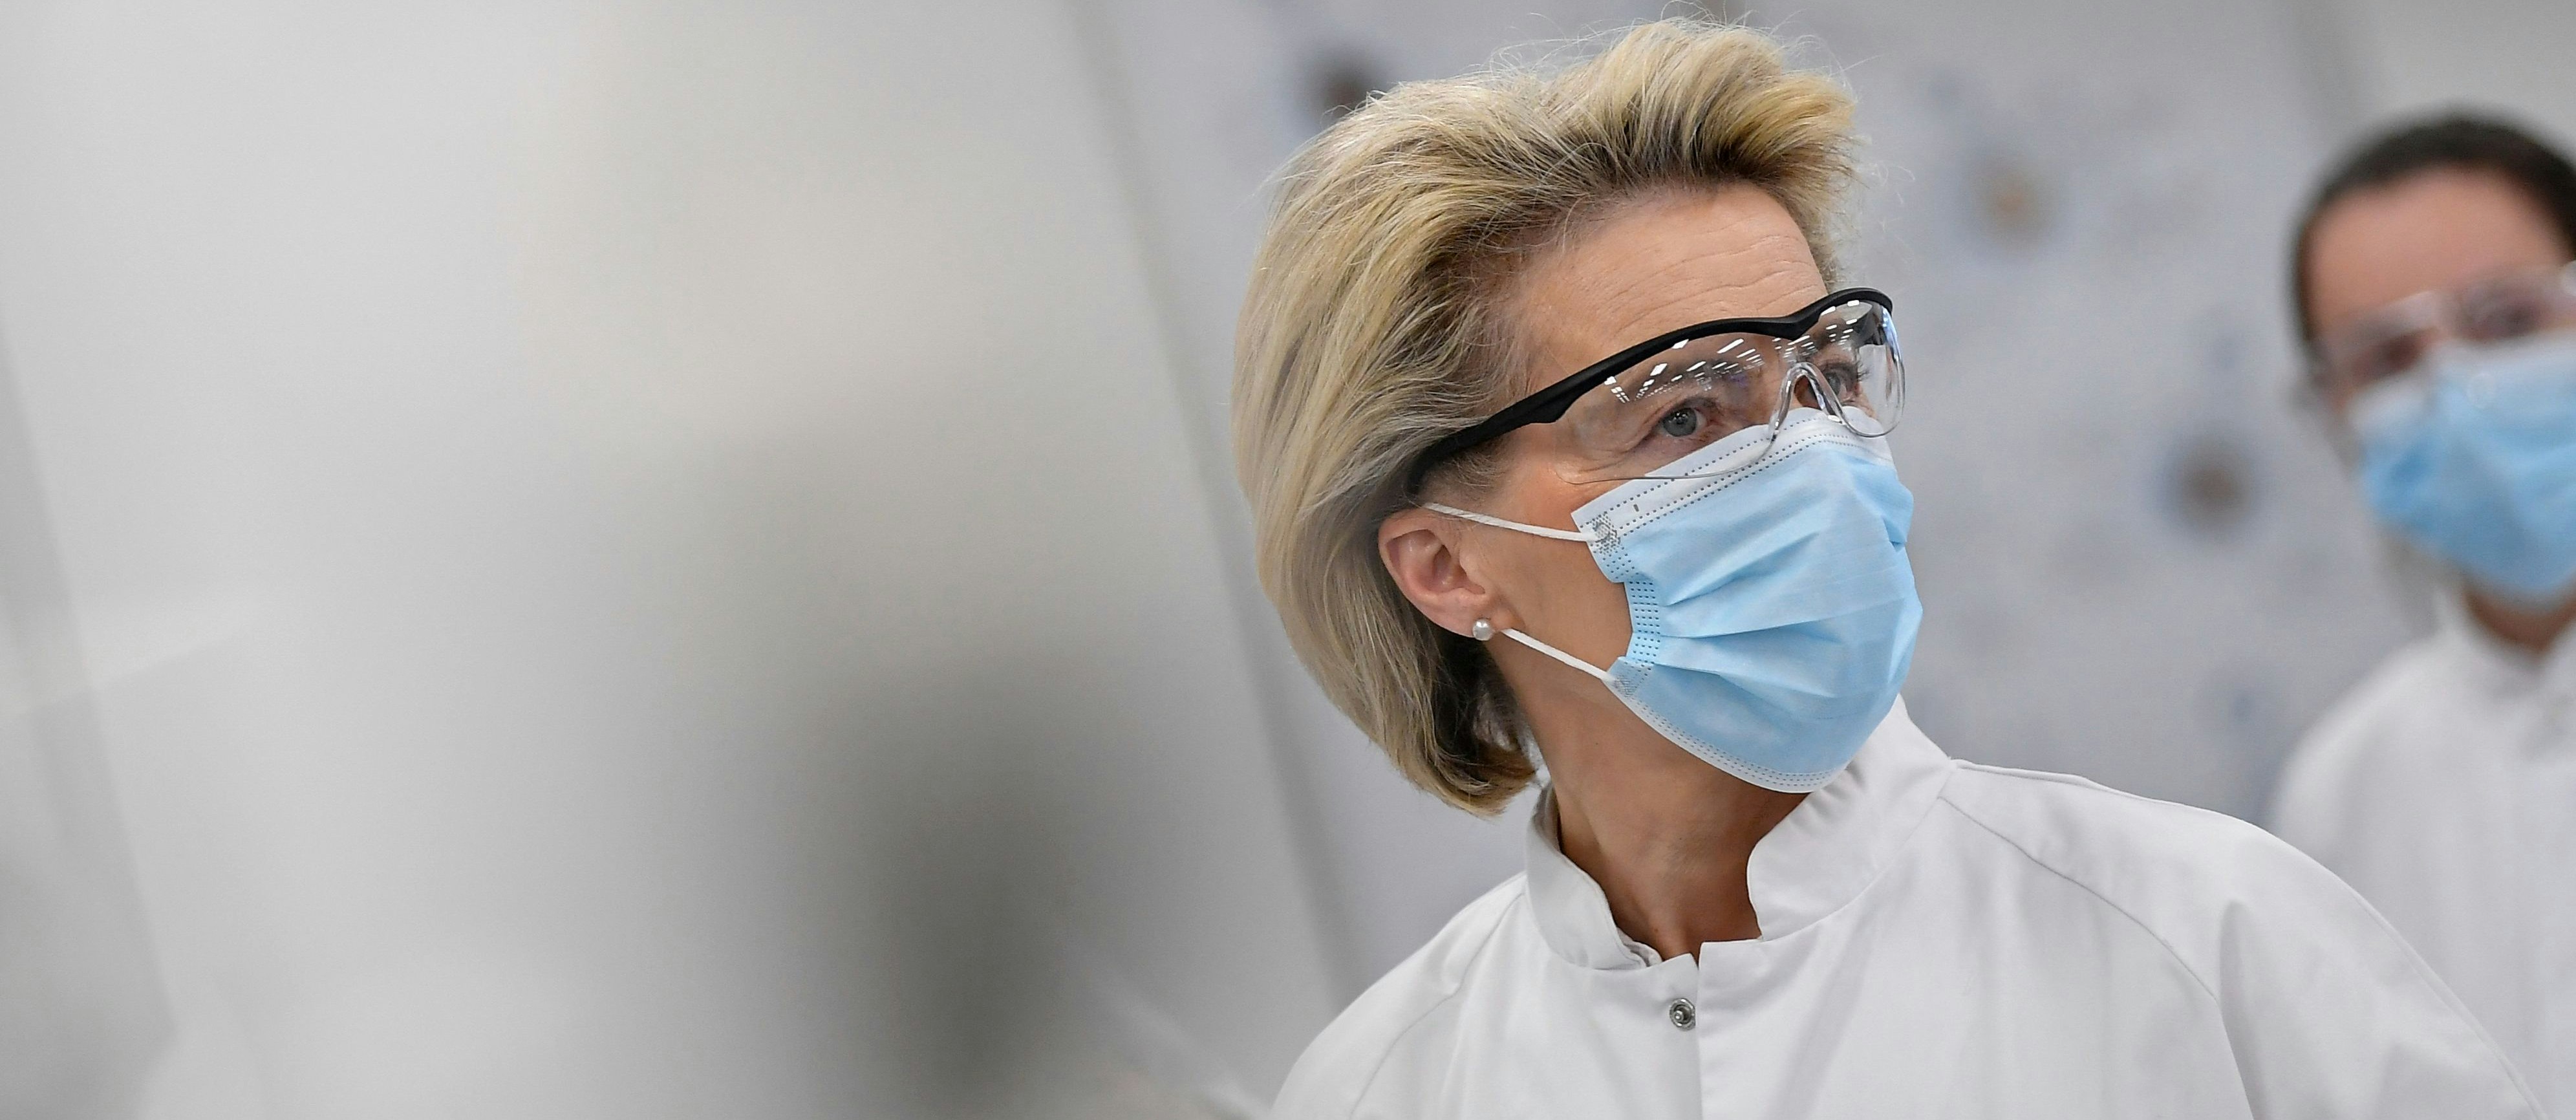 Kommissionspräsidentin Ursula von der Leyen besucht eine Produktionsstätte von Pfizer-BioNtech